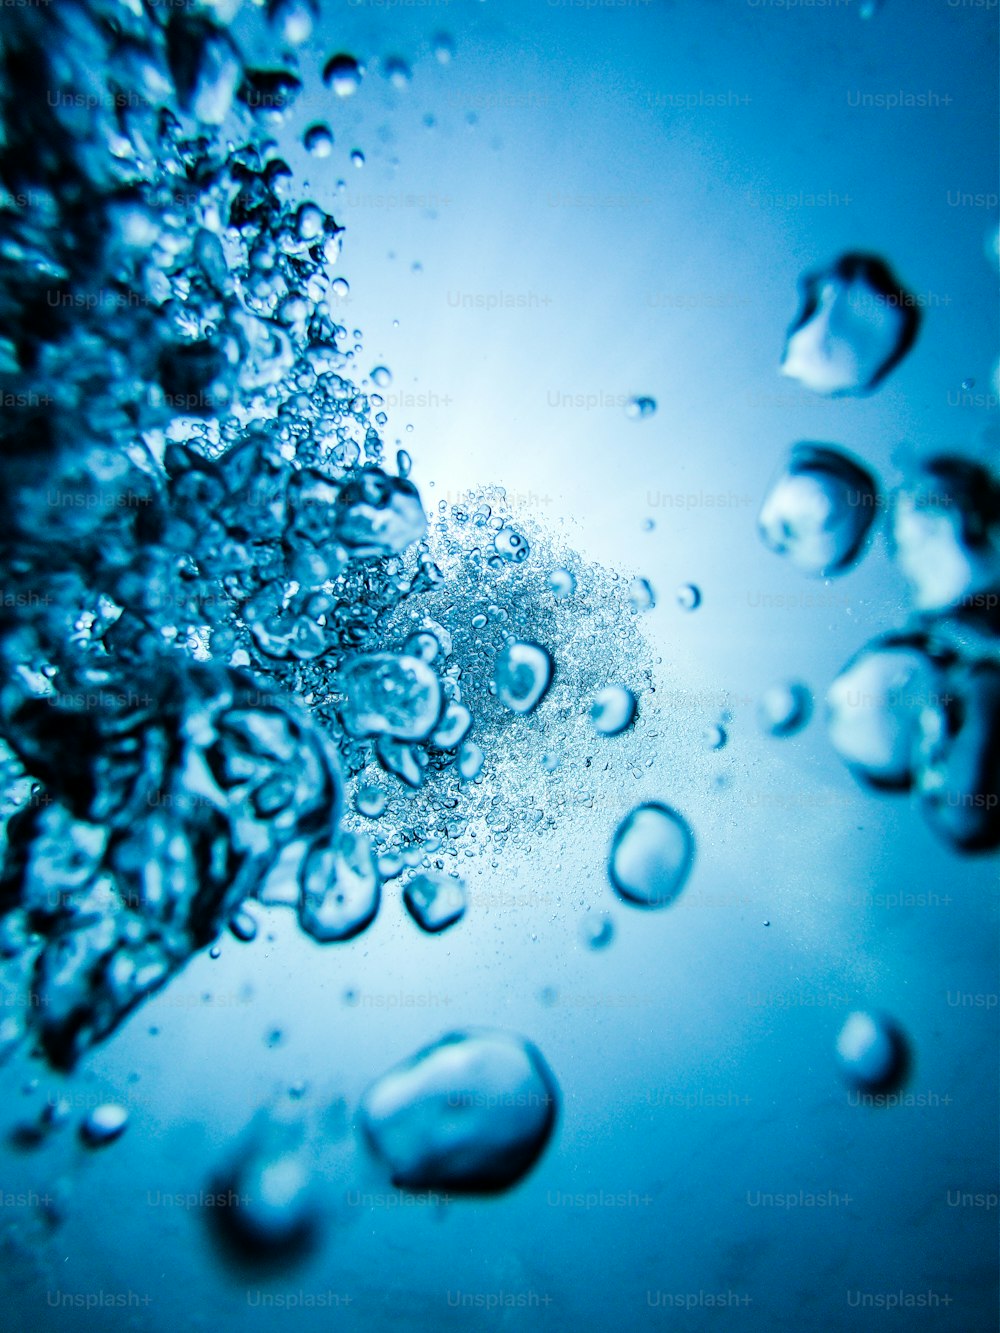 Un primer plano de burbujas de agua en una superficie azul